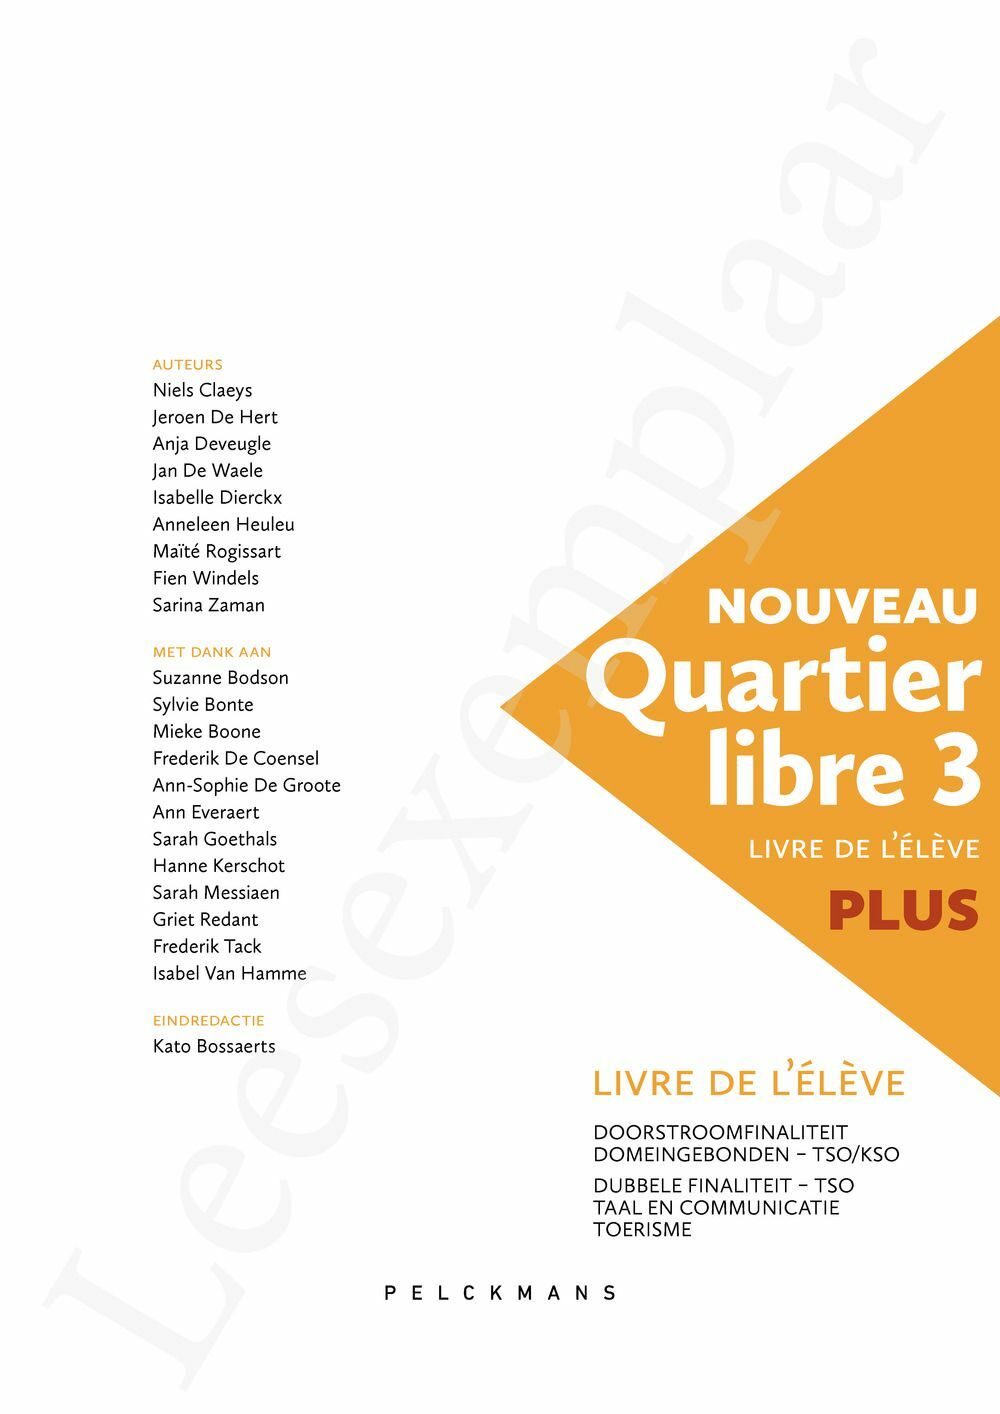 Preview: Nouveau Quartier libre 3 Plus Livre de l'élève (editie 2024) (incl. Éclats, Pelckmans Portaal)